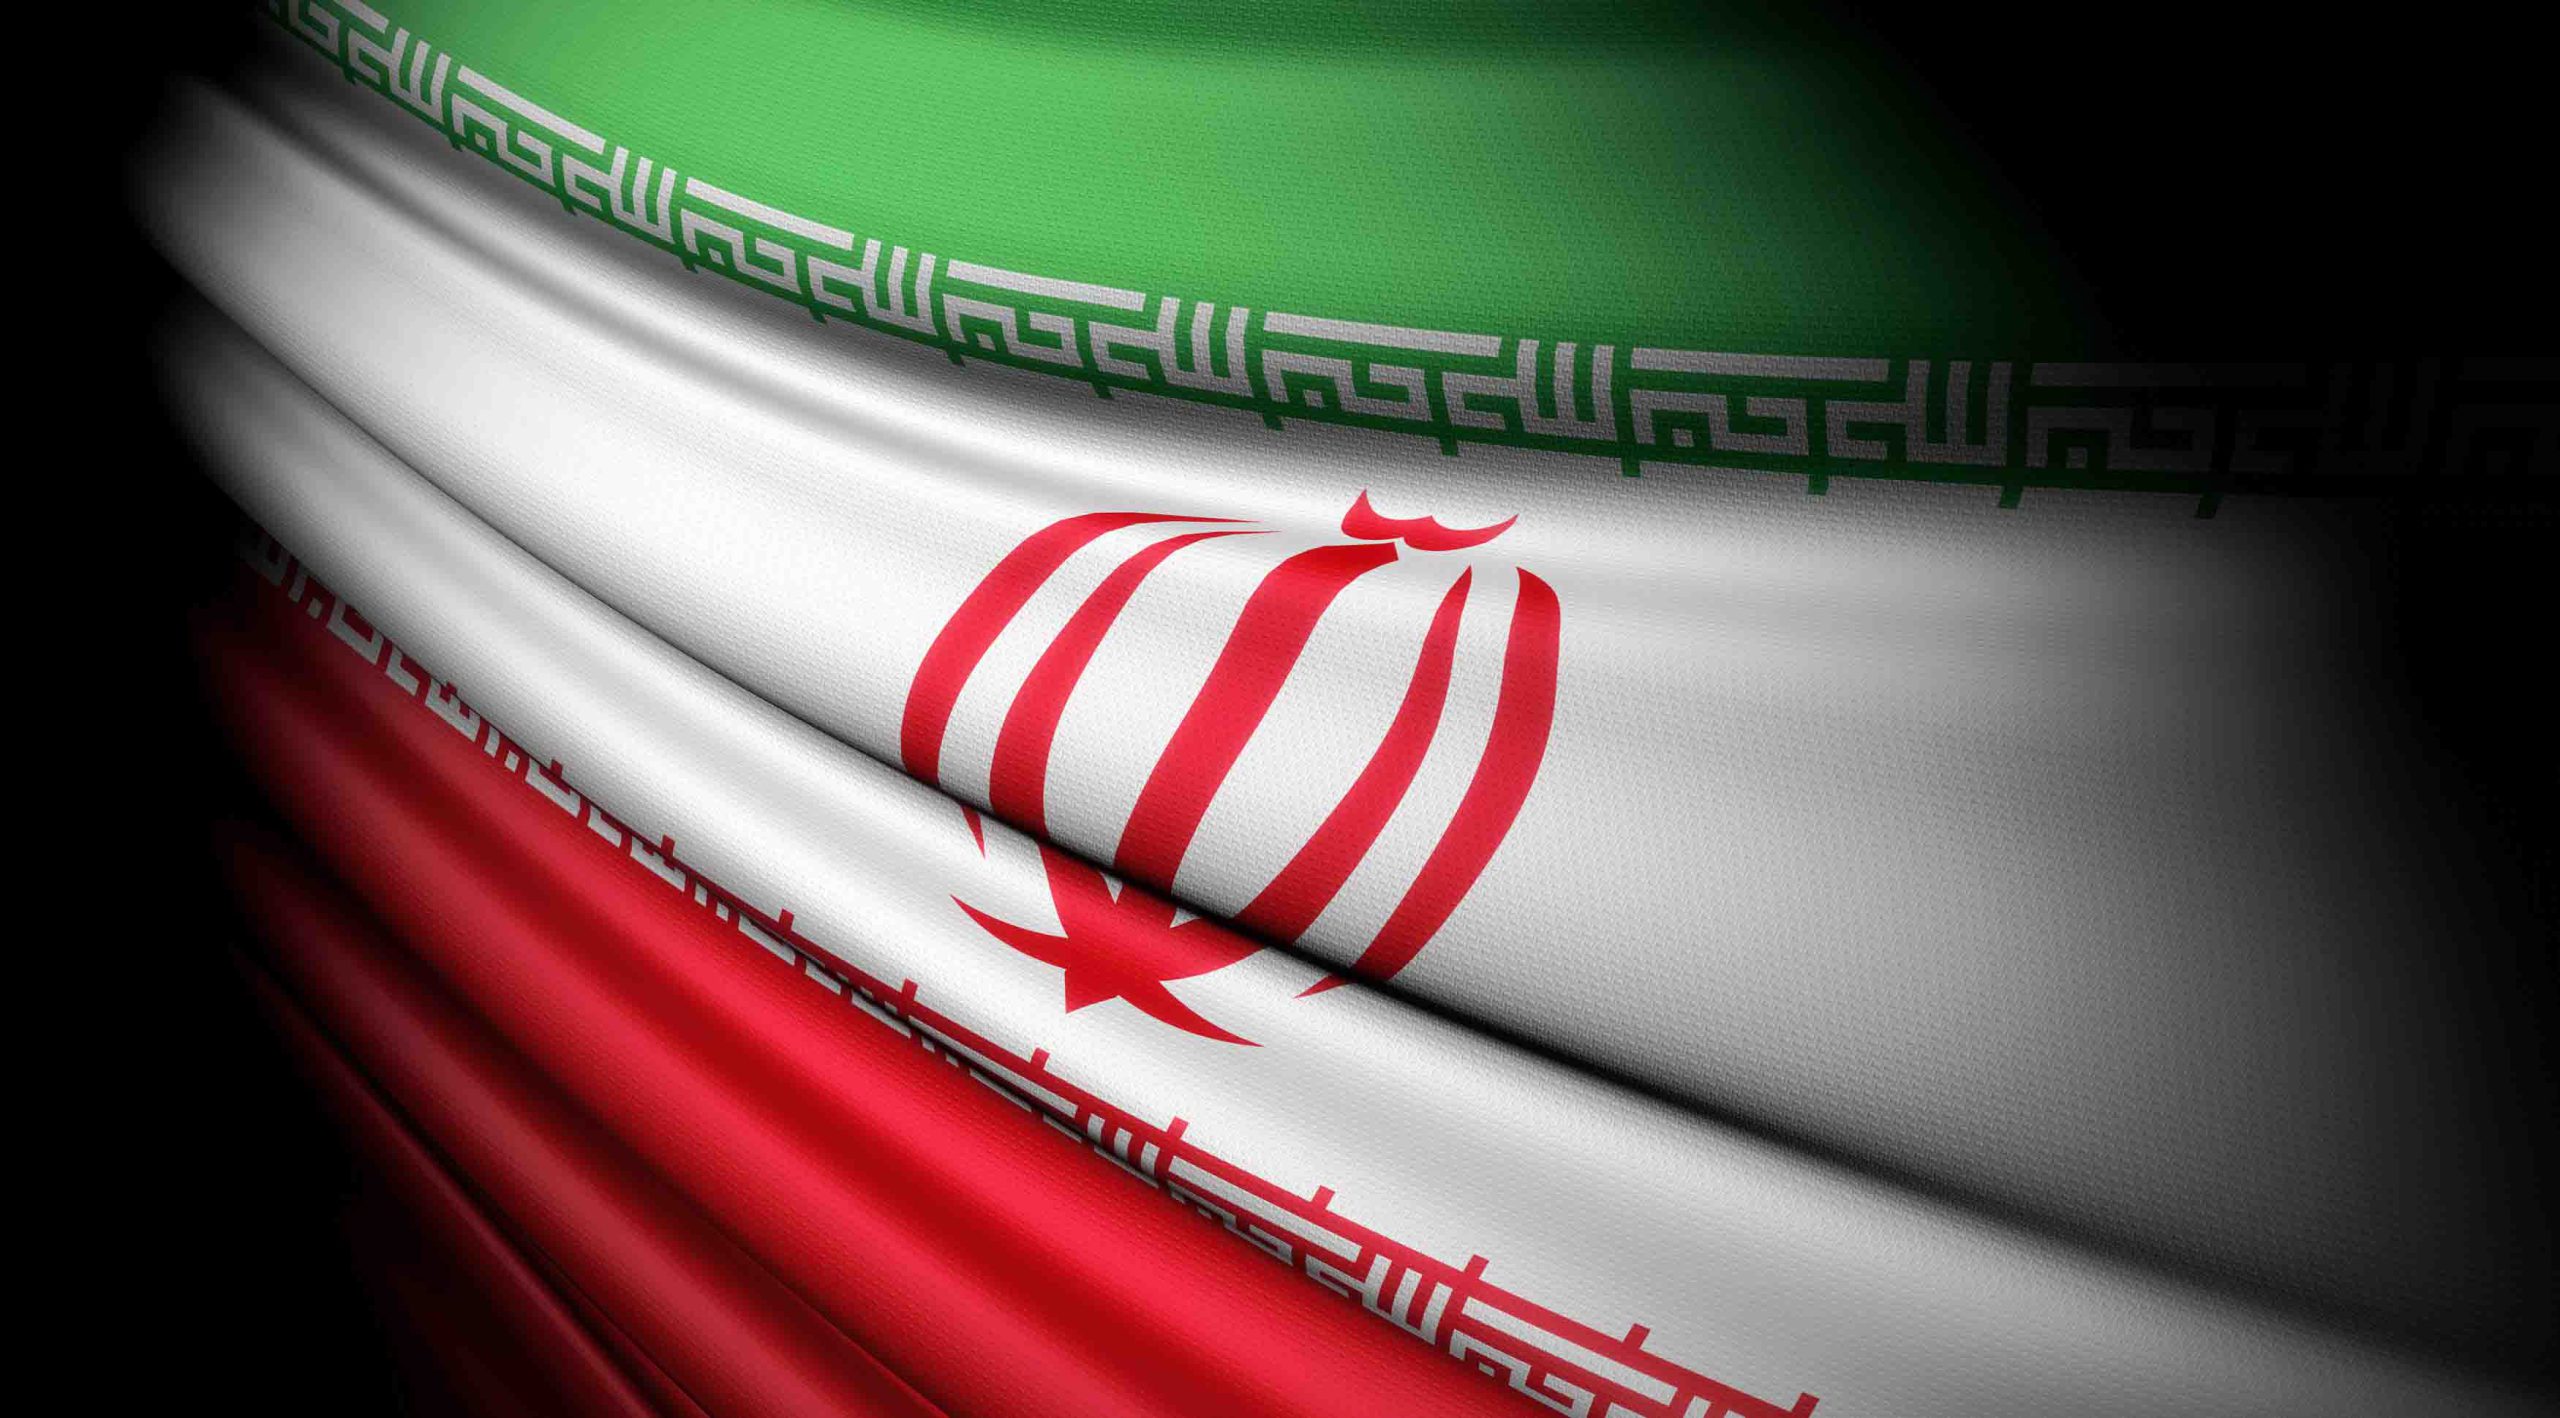 پرچم ساتن ایران - چاپ پرچم ساتن در پایتخت پرچم